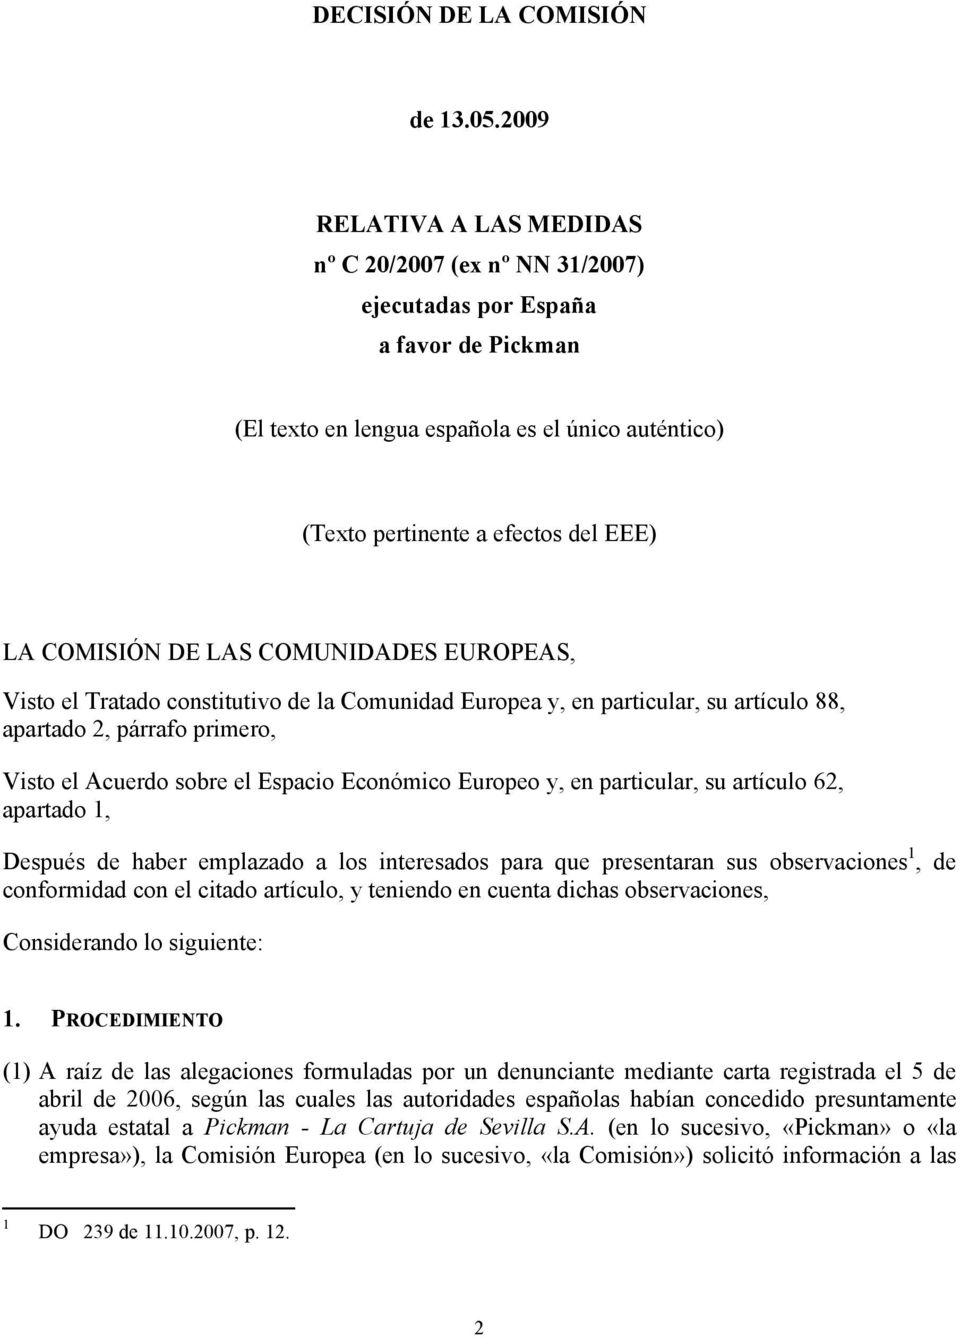 COMISIÓN DE LAS COMUNIDADES EUROPEAS, Visto el Tratado constitutivo de la Comunidad Europea y, en particular, su artículo 88, apartado 2, párrafo primero, Visto el Acuerdo sobre el Espacio Económico